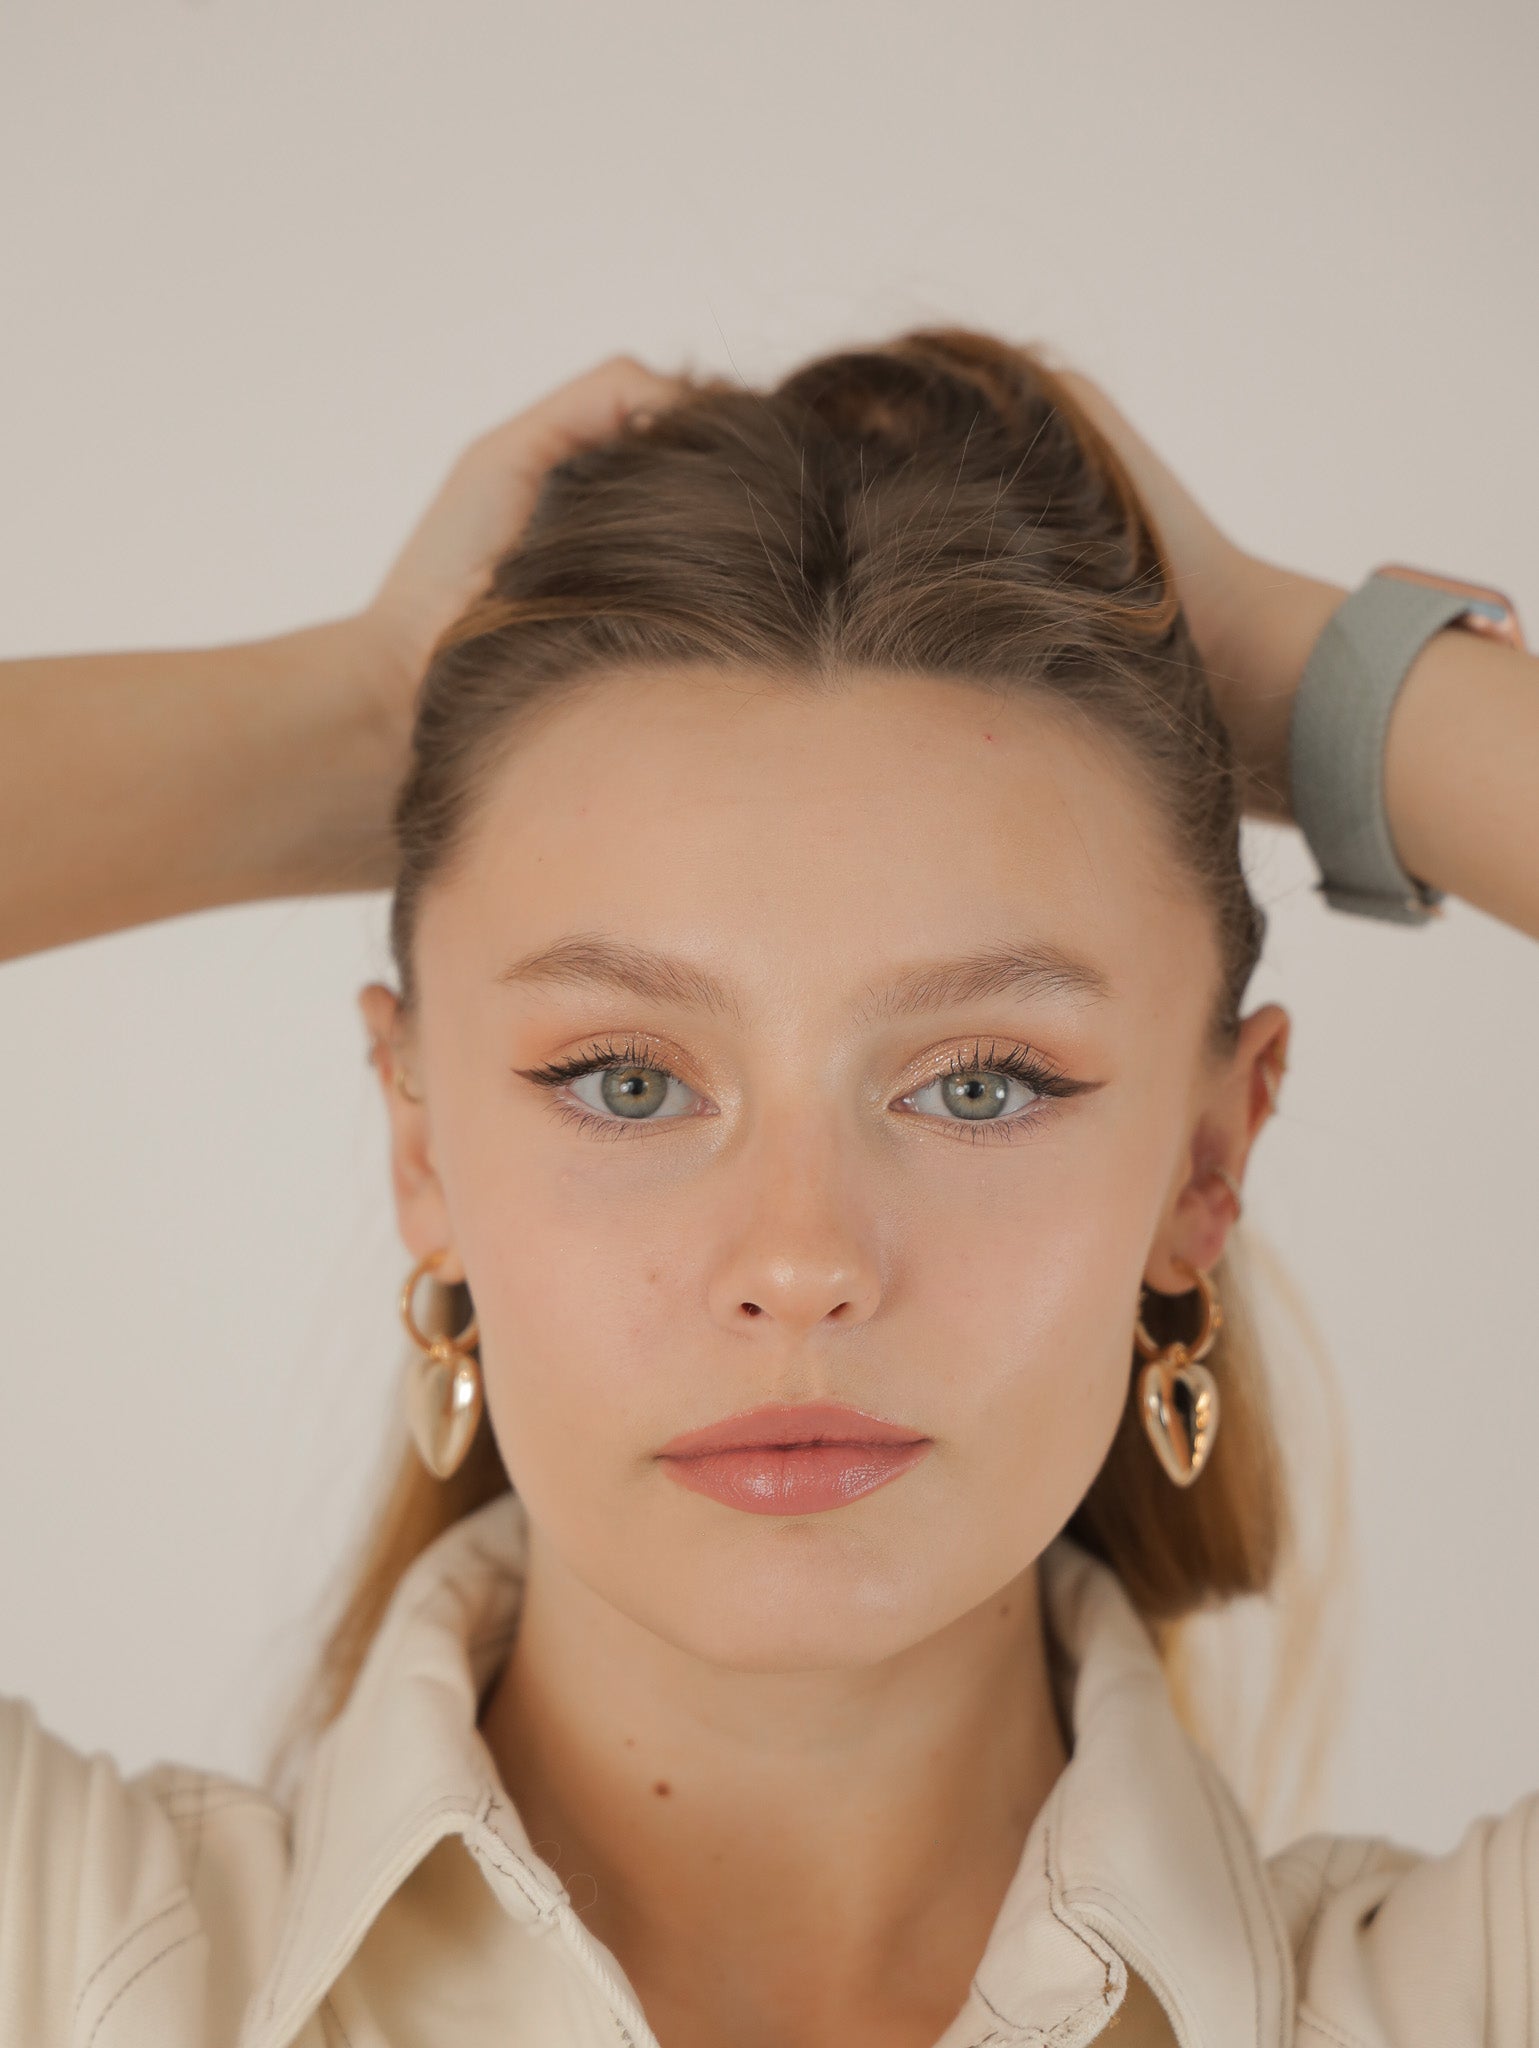 Molly Green - Lovelock Earrings - Jewelry